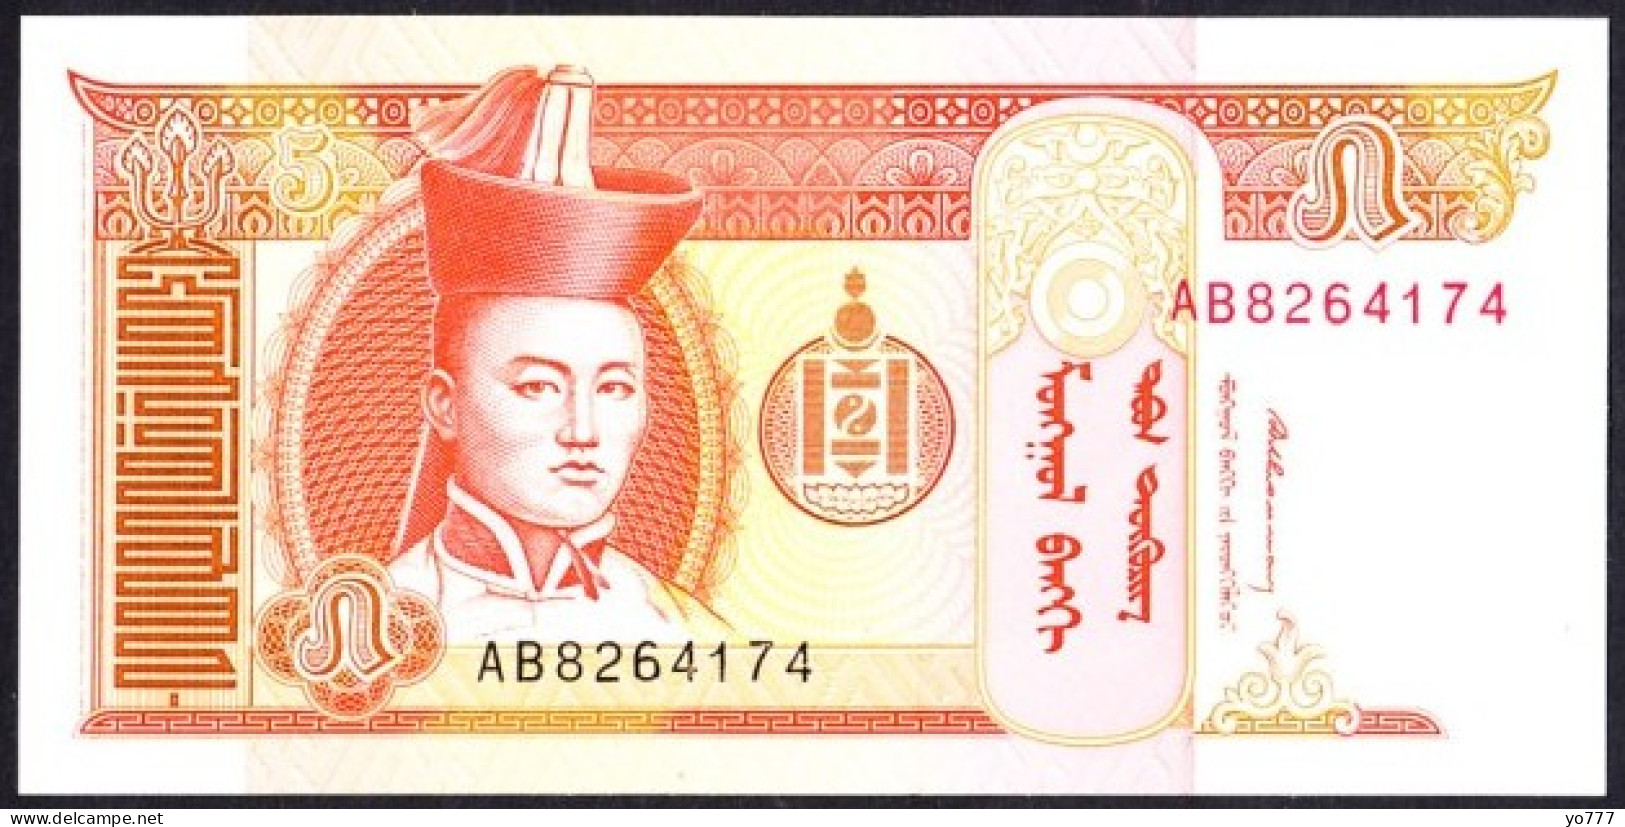 PM MONGOLIA PAPER MONEY UNC - Mongolie